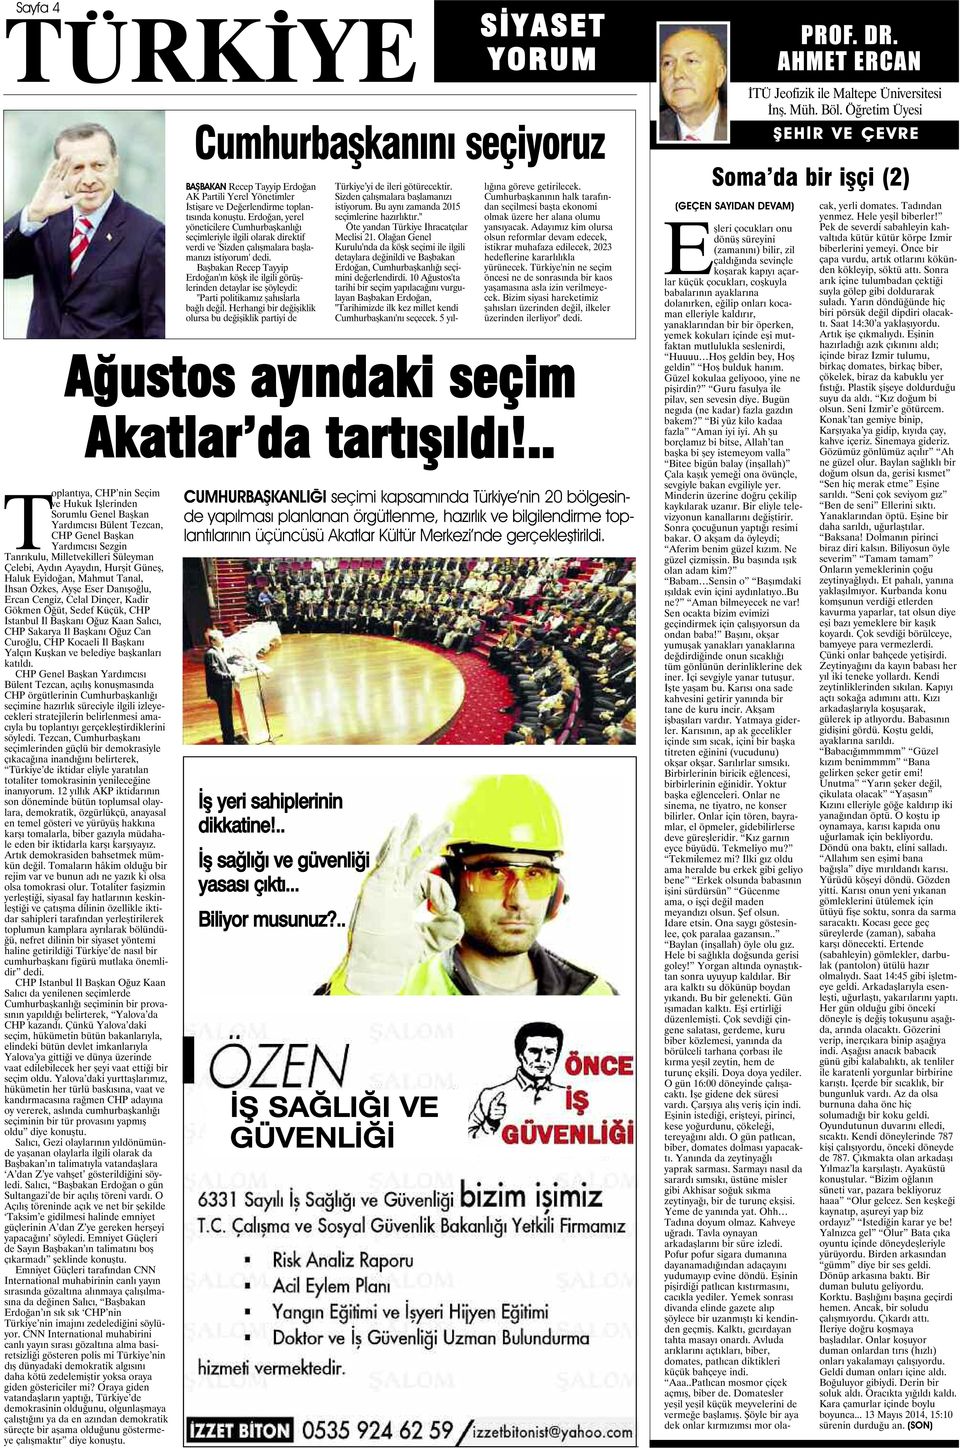 Sakarya İl Başkanı Oğuz Can Curoğlu, CHP Kocaeli İl Başkanı Yalçın Kuşkan ve belediye başkanları katıldı.